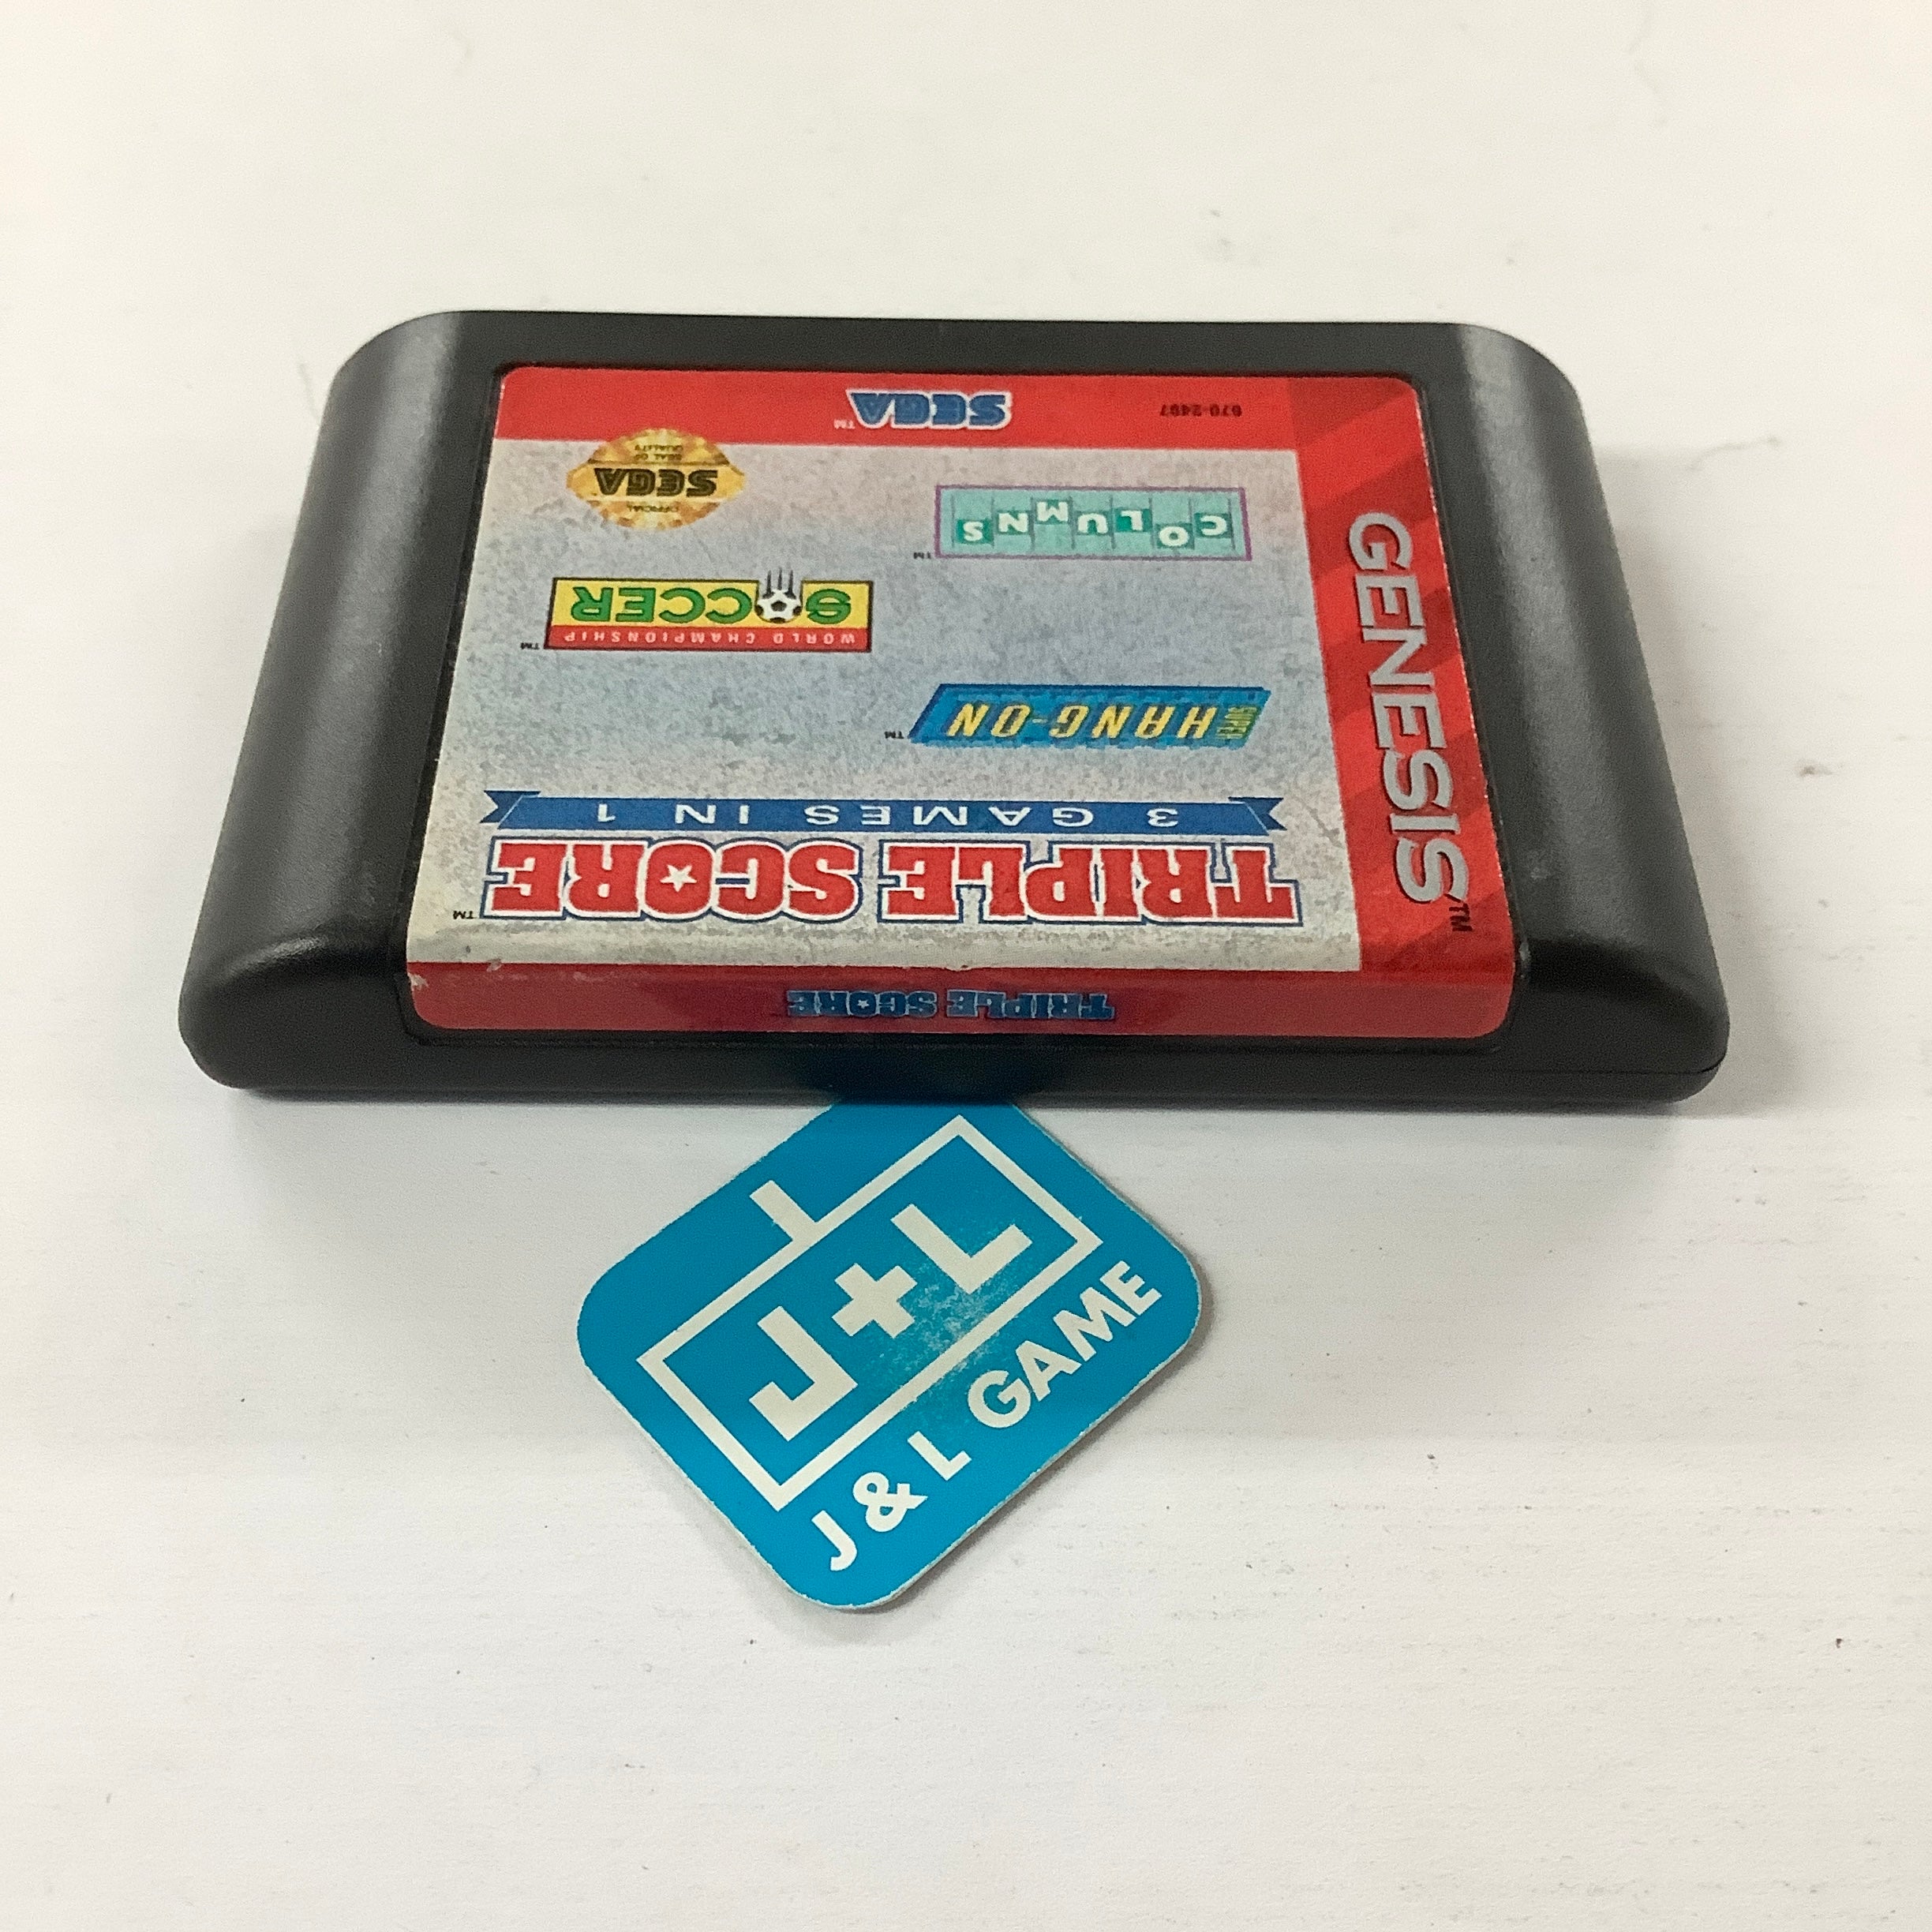 Triple Score: 3 Games in 1 - (SG) SEGA Genesis [Pre-Owned] Video Games Sega   